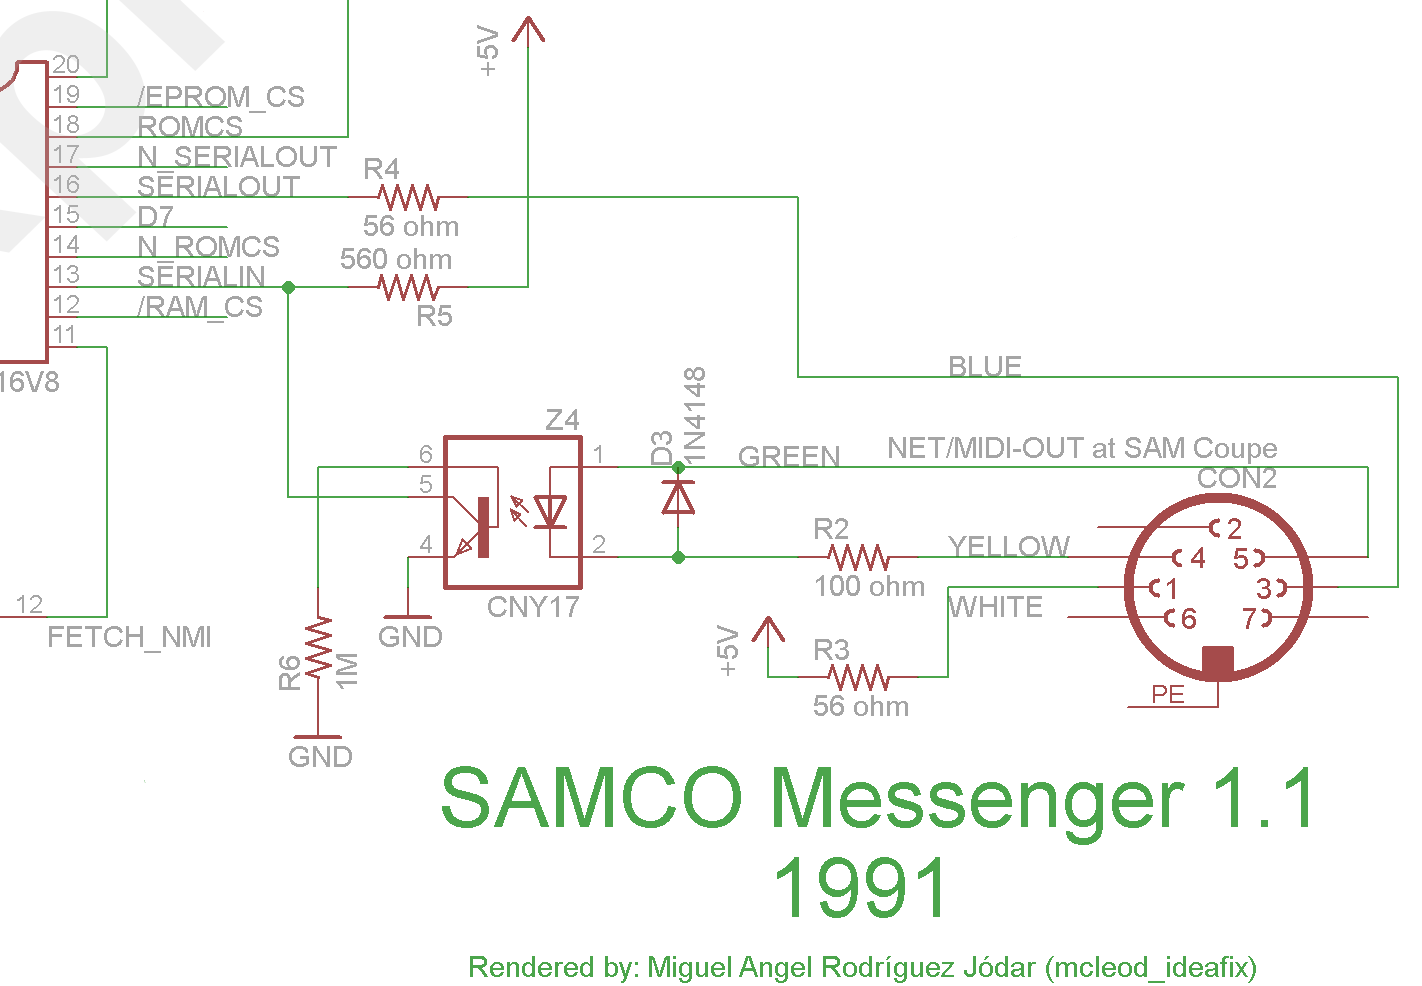 Messenger network port schematic